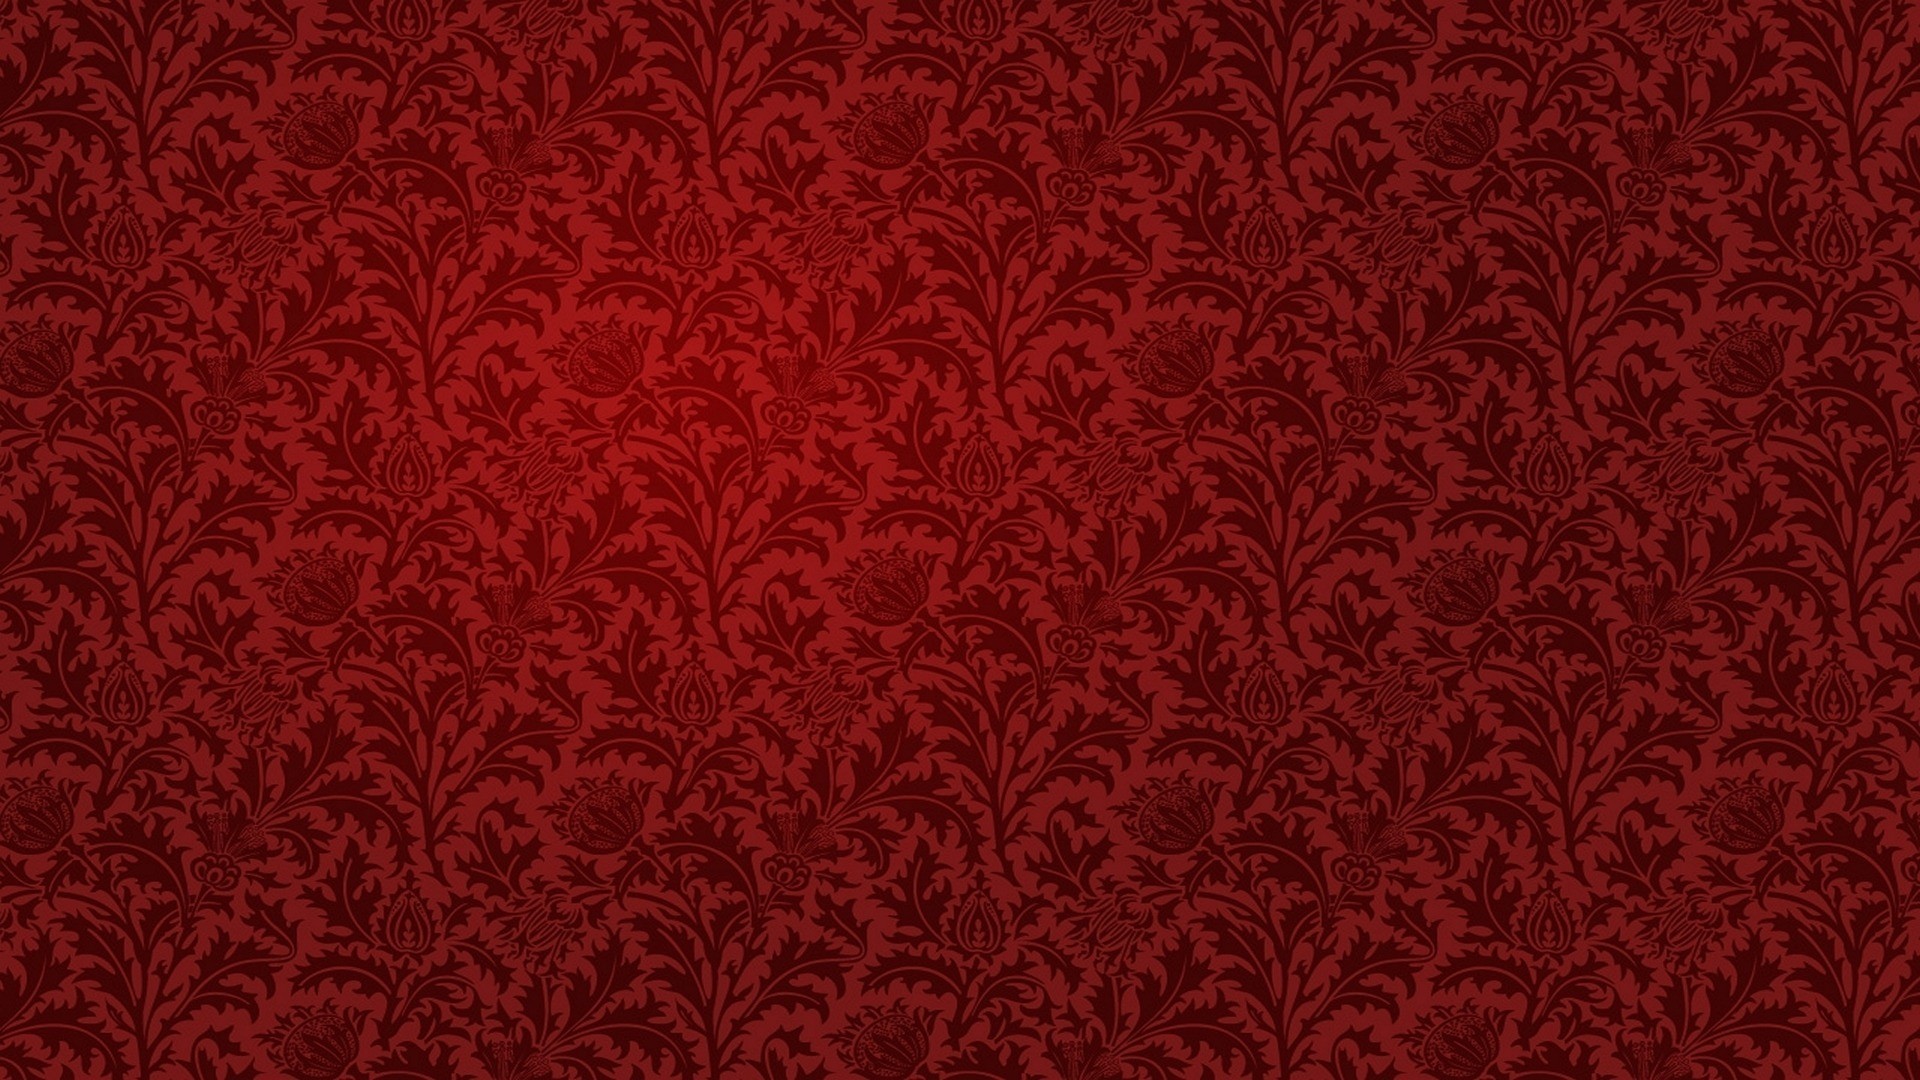 Download Red Patterns Wallpaper 1920x1080 Wallpoper 421634 1920x1080